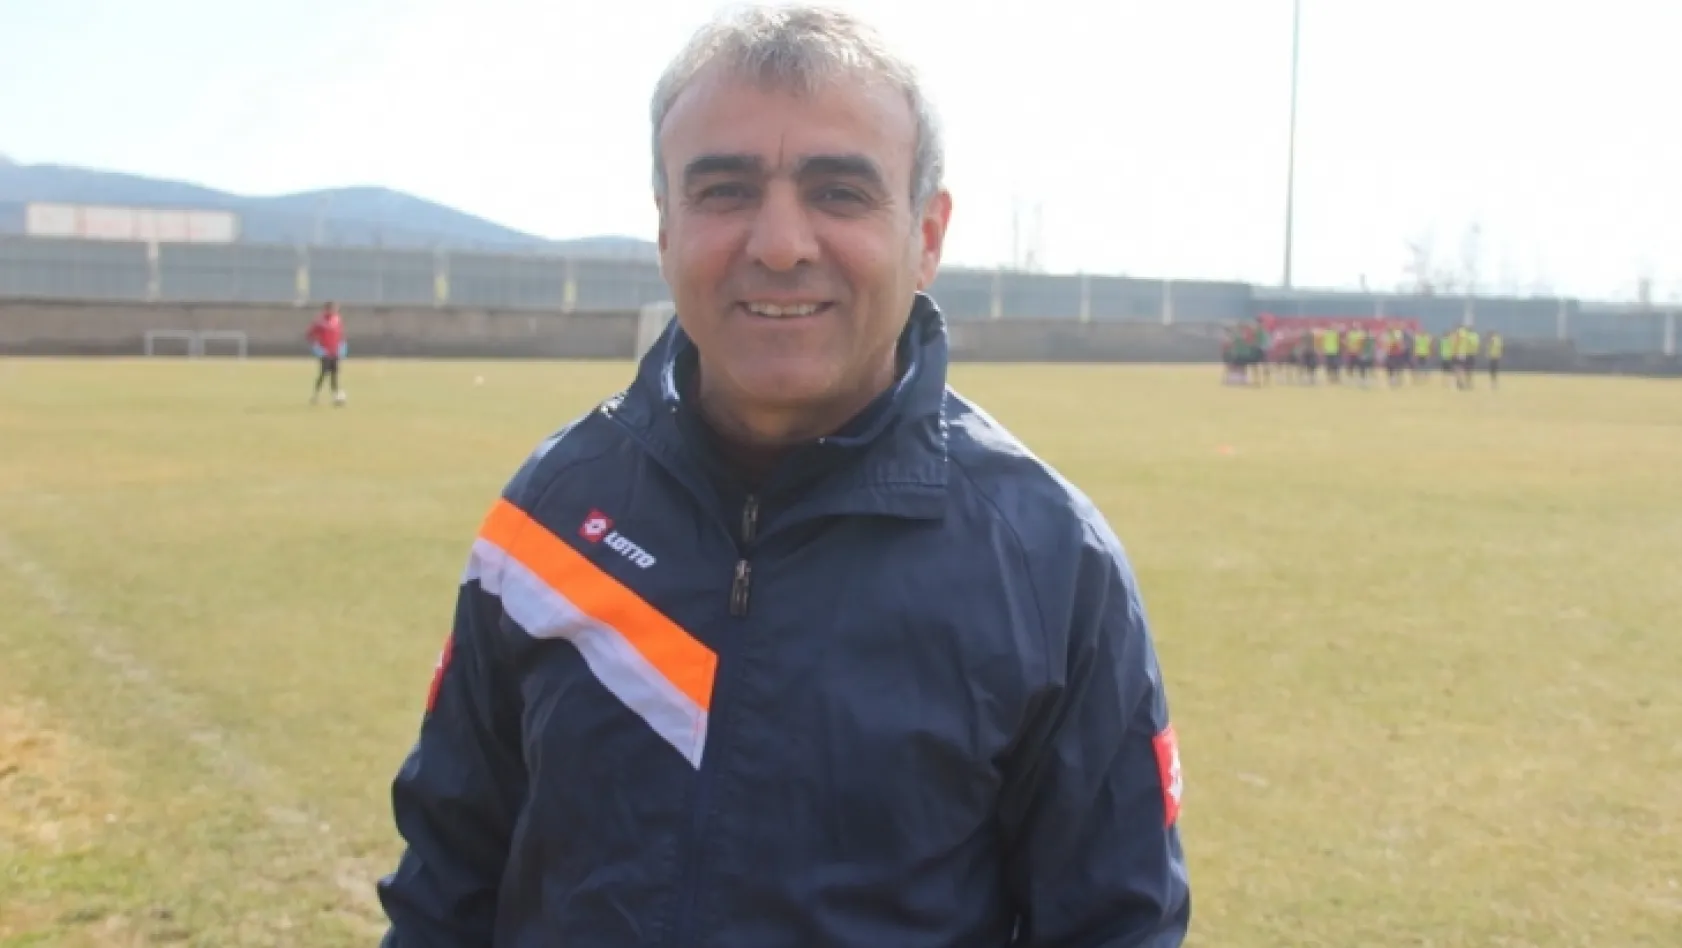 Elazığspor'un yeni teknik direktörü şehre geldi